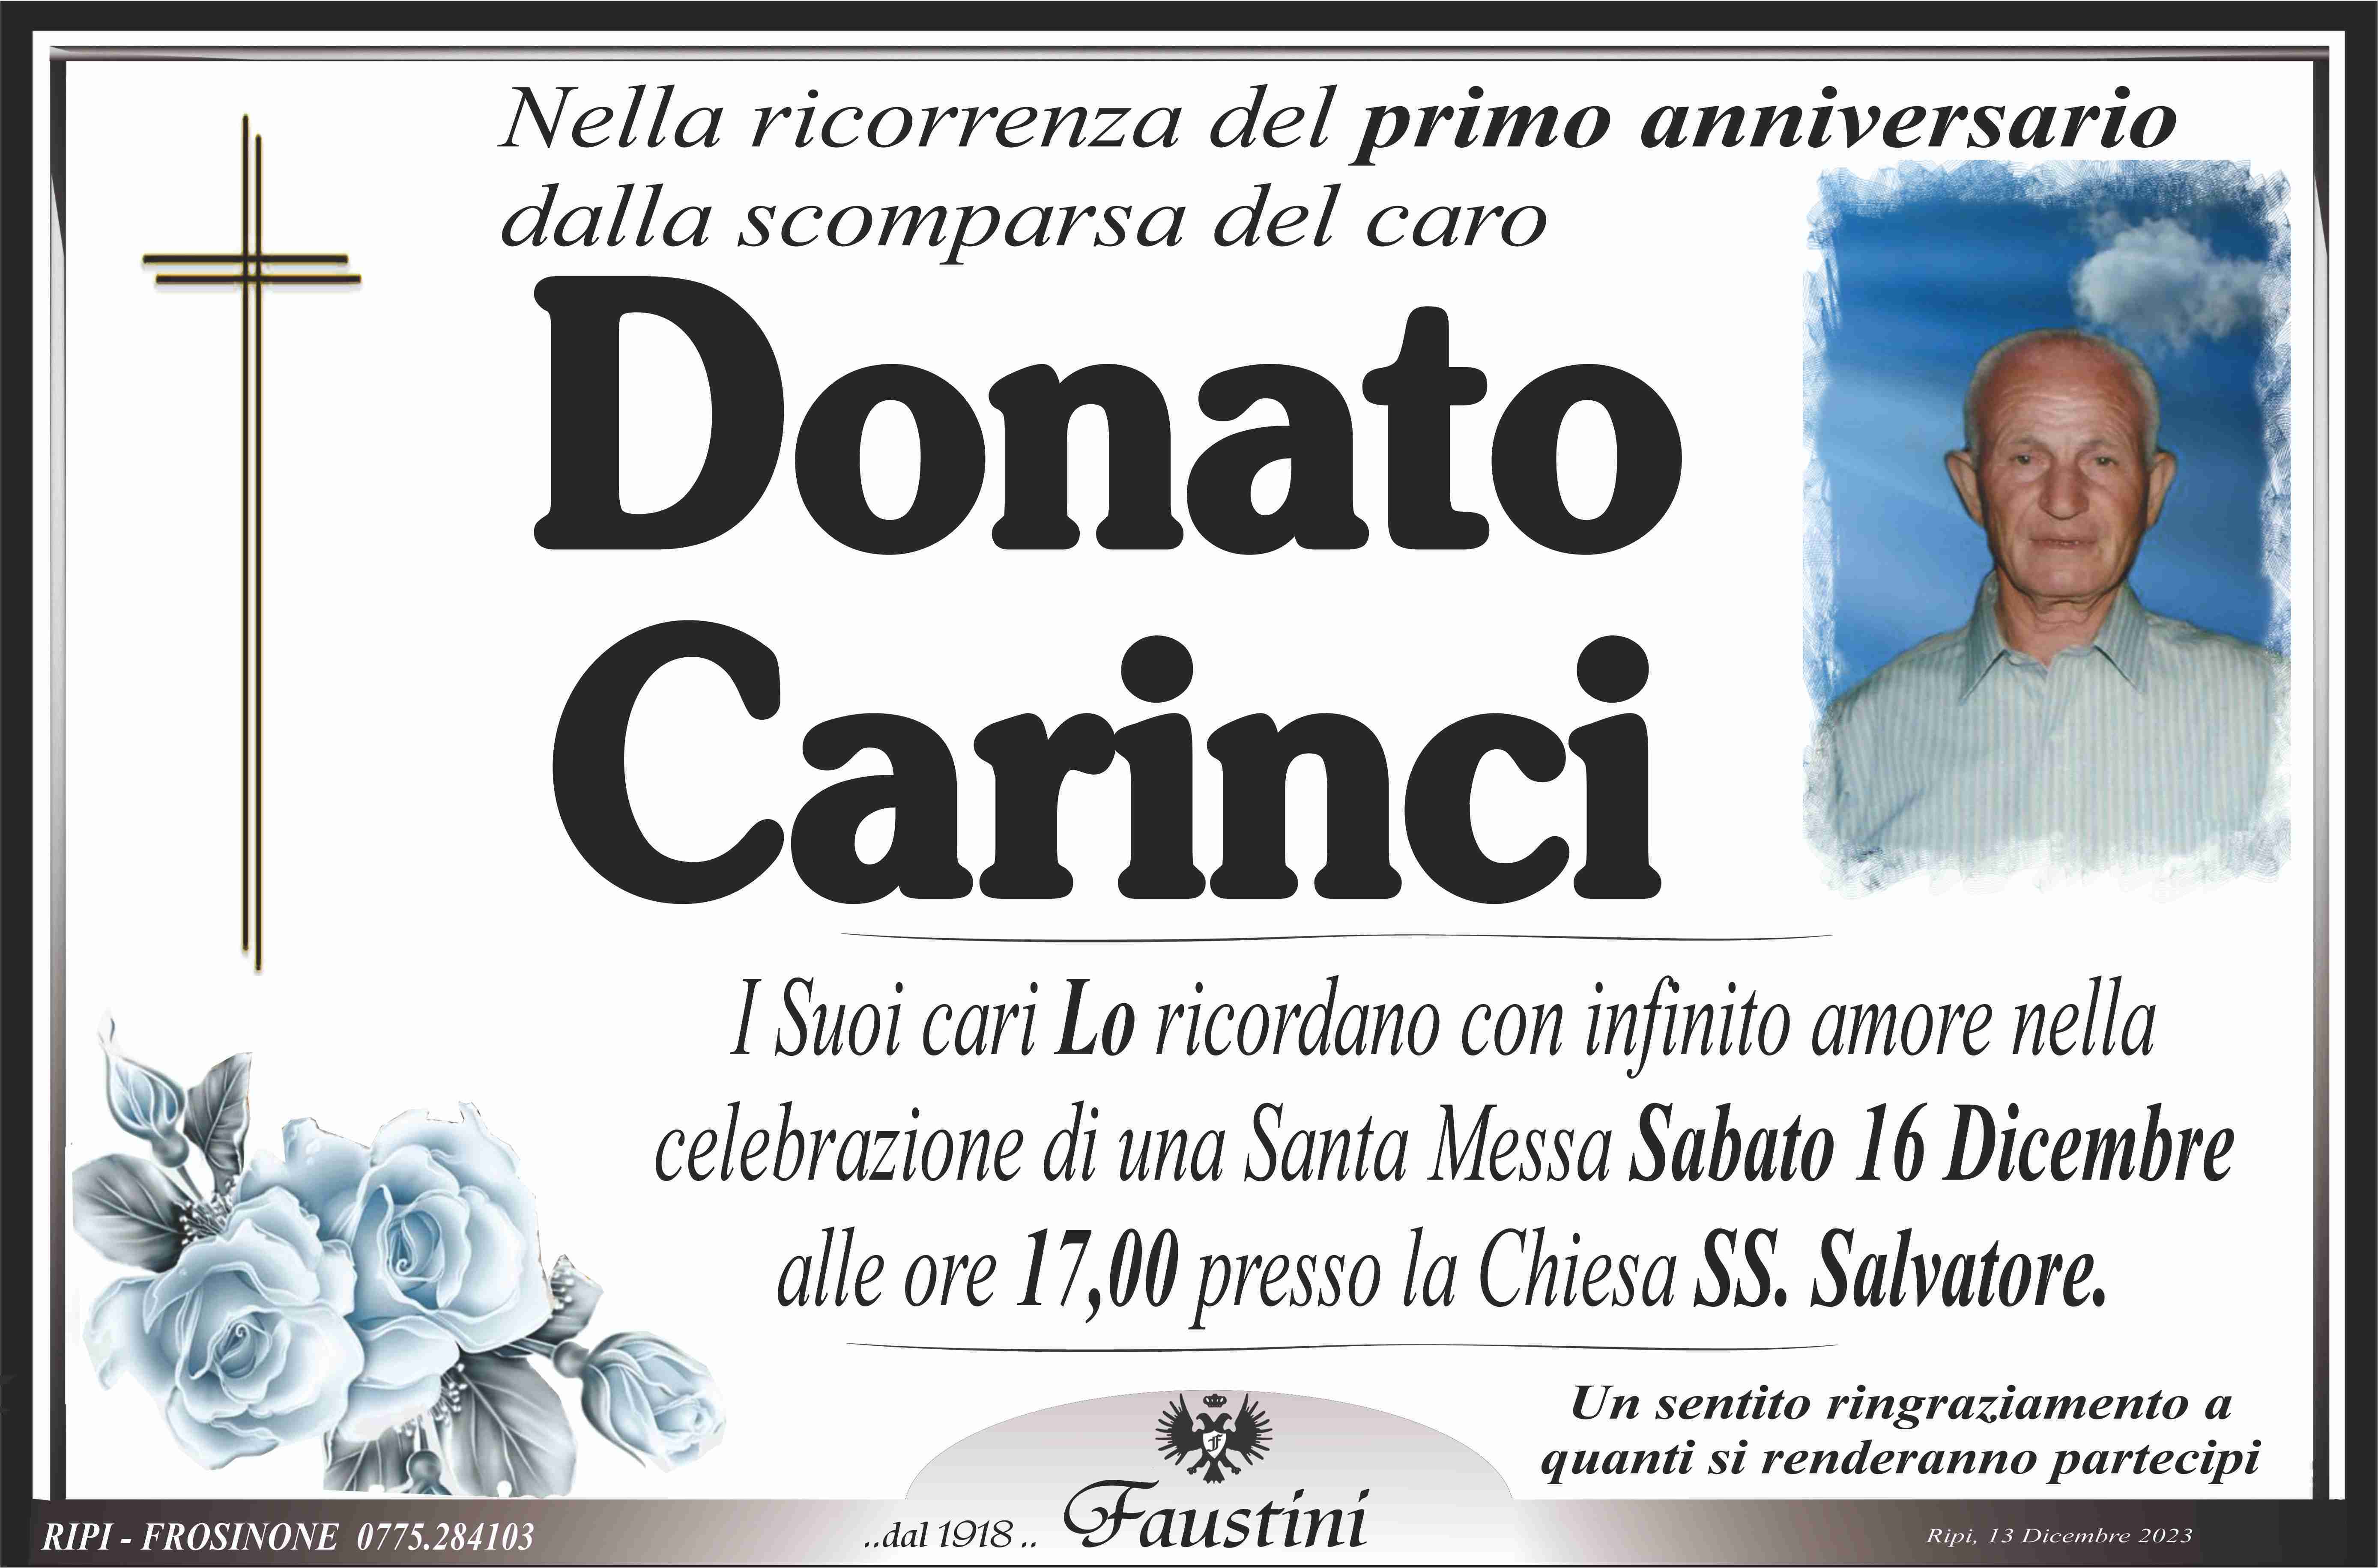 Donato Carinci